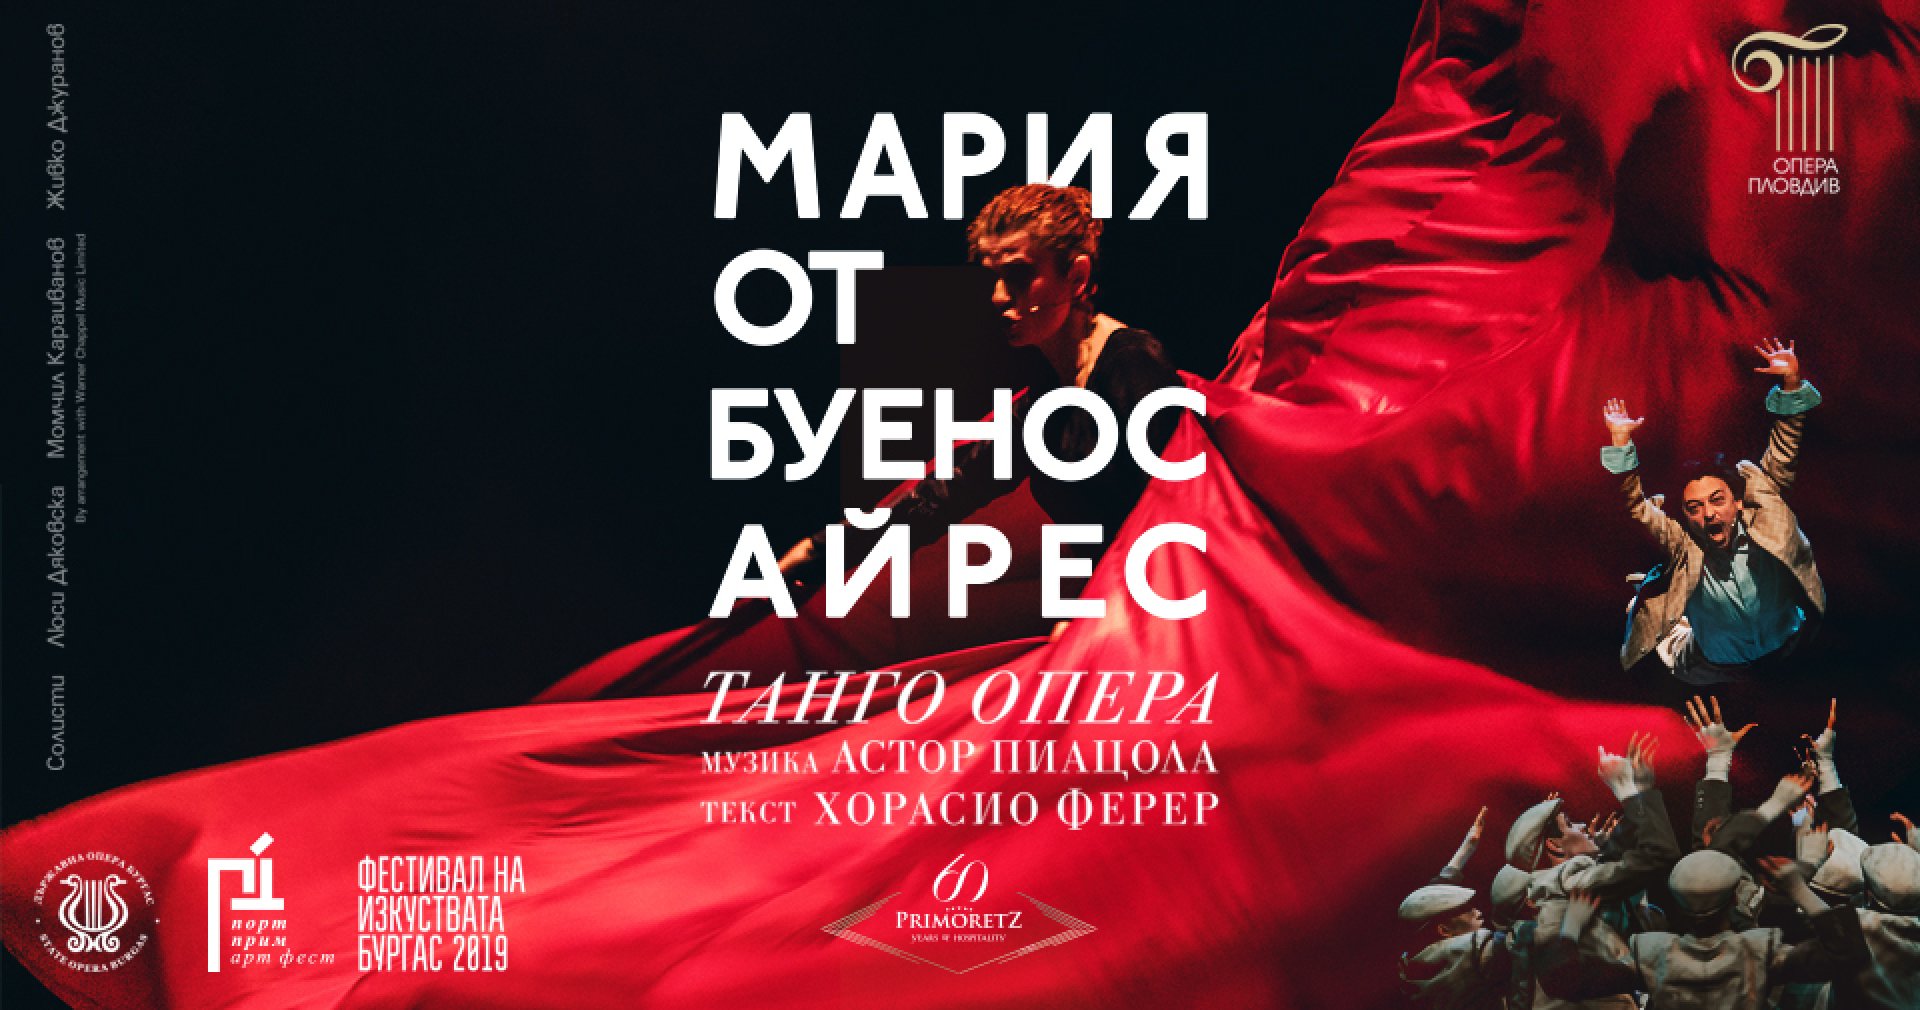 Порт Прим Арт Фест 2019 представя: Премиера в Бургас на танго опера 